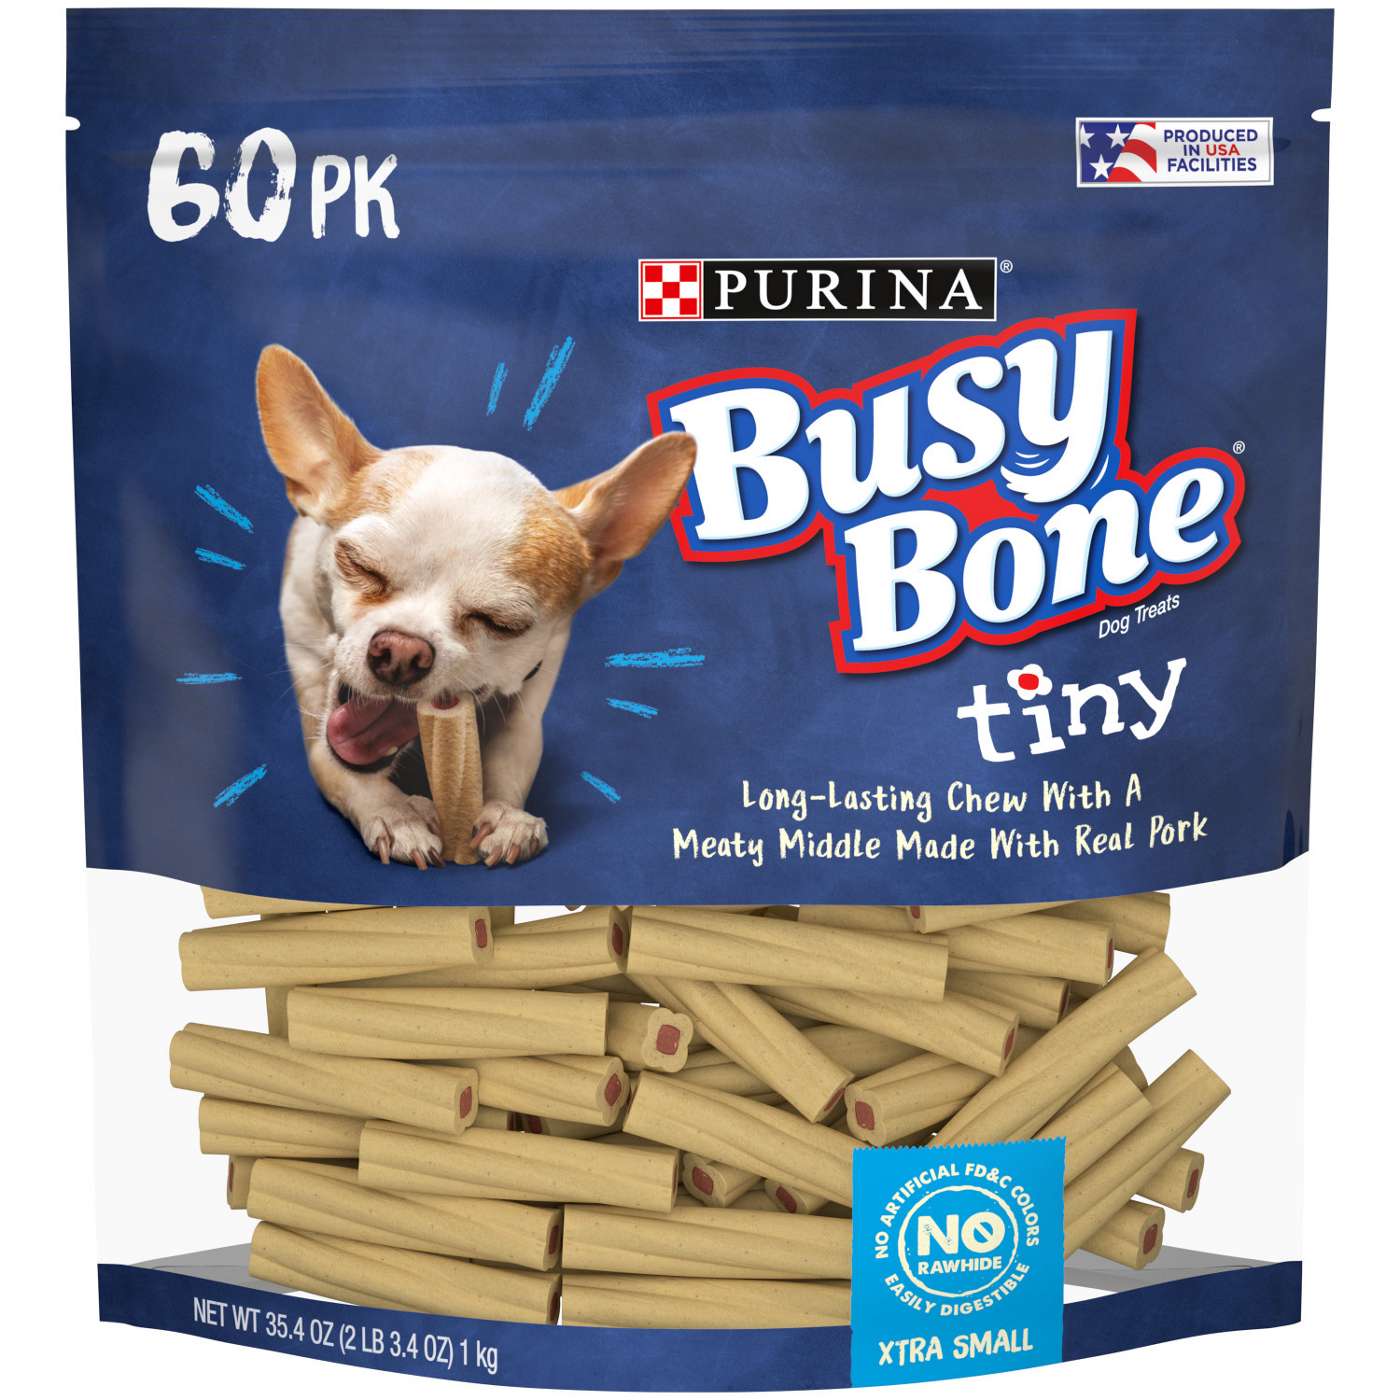 Busy Bone Tiny Dog Treats; image 1 of 10